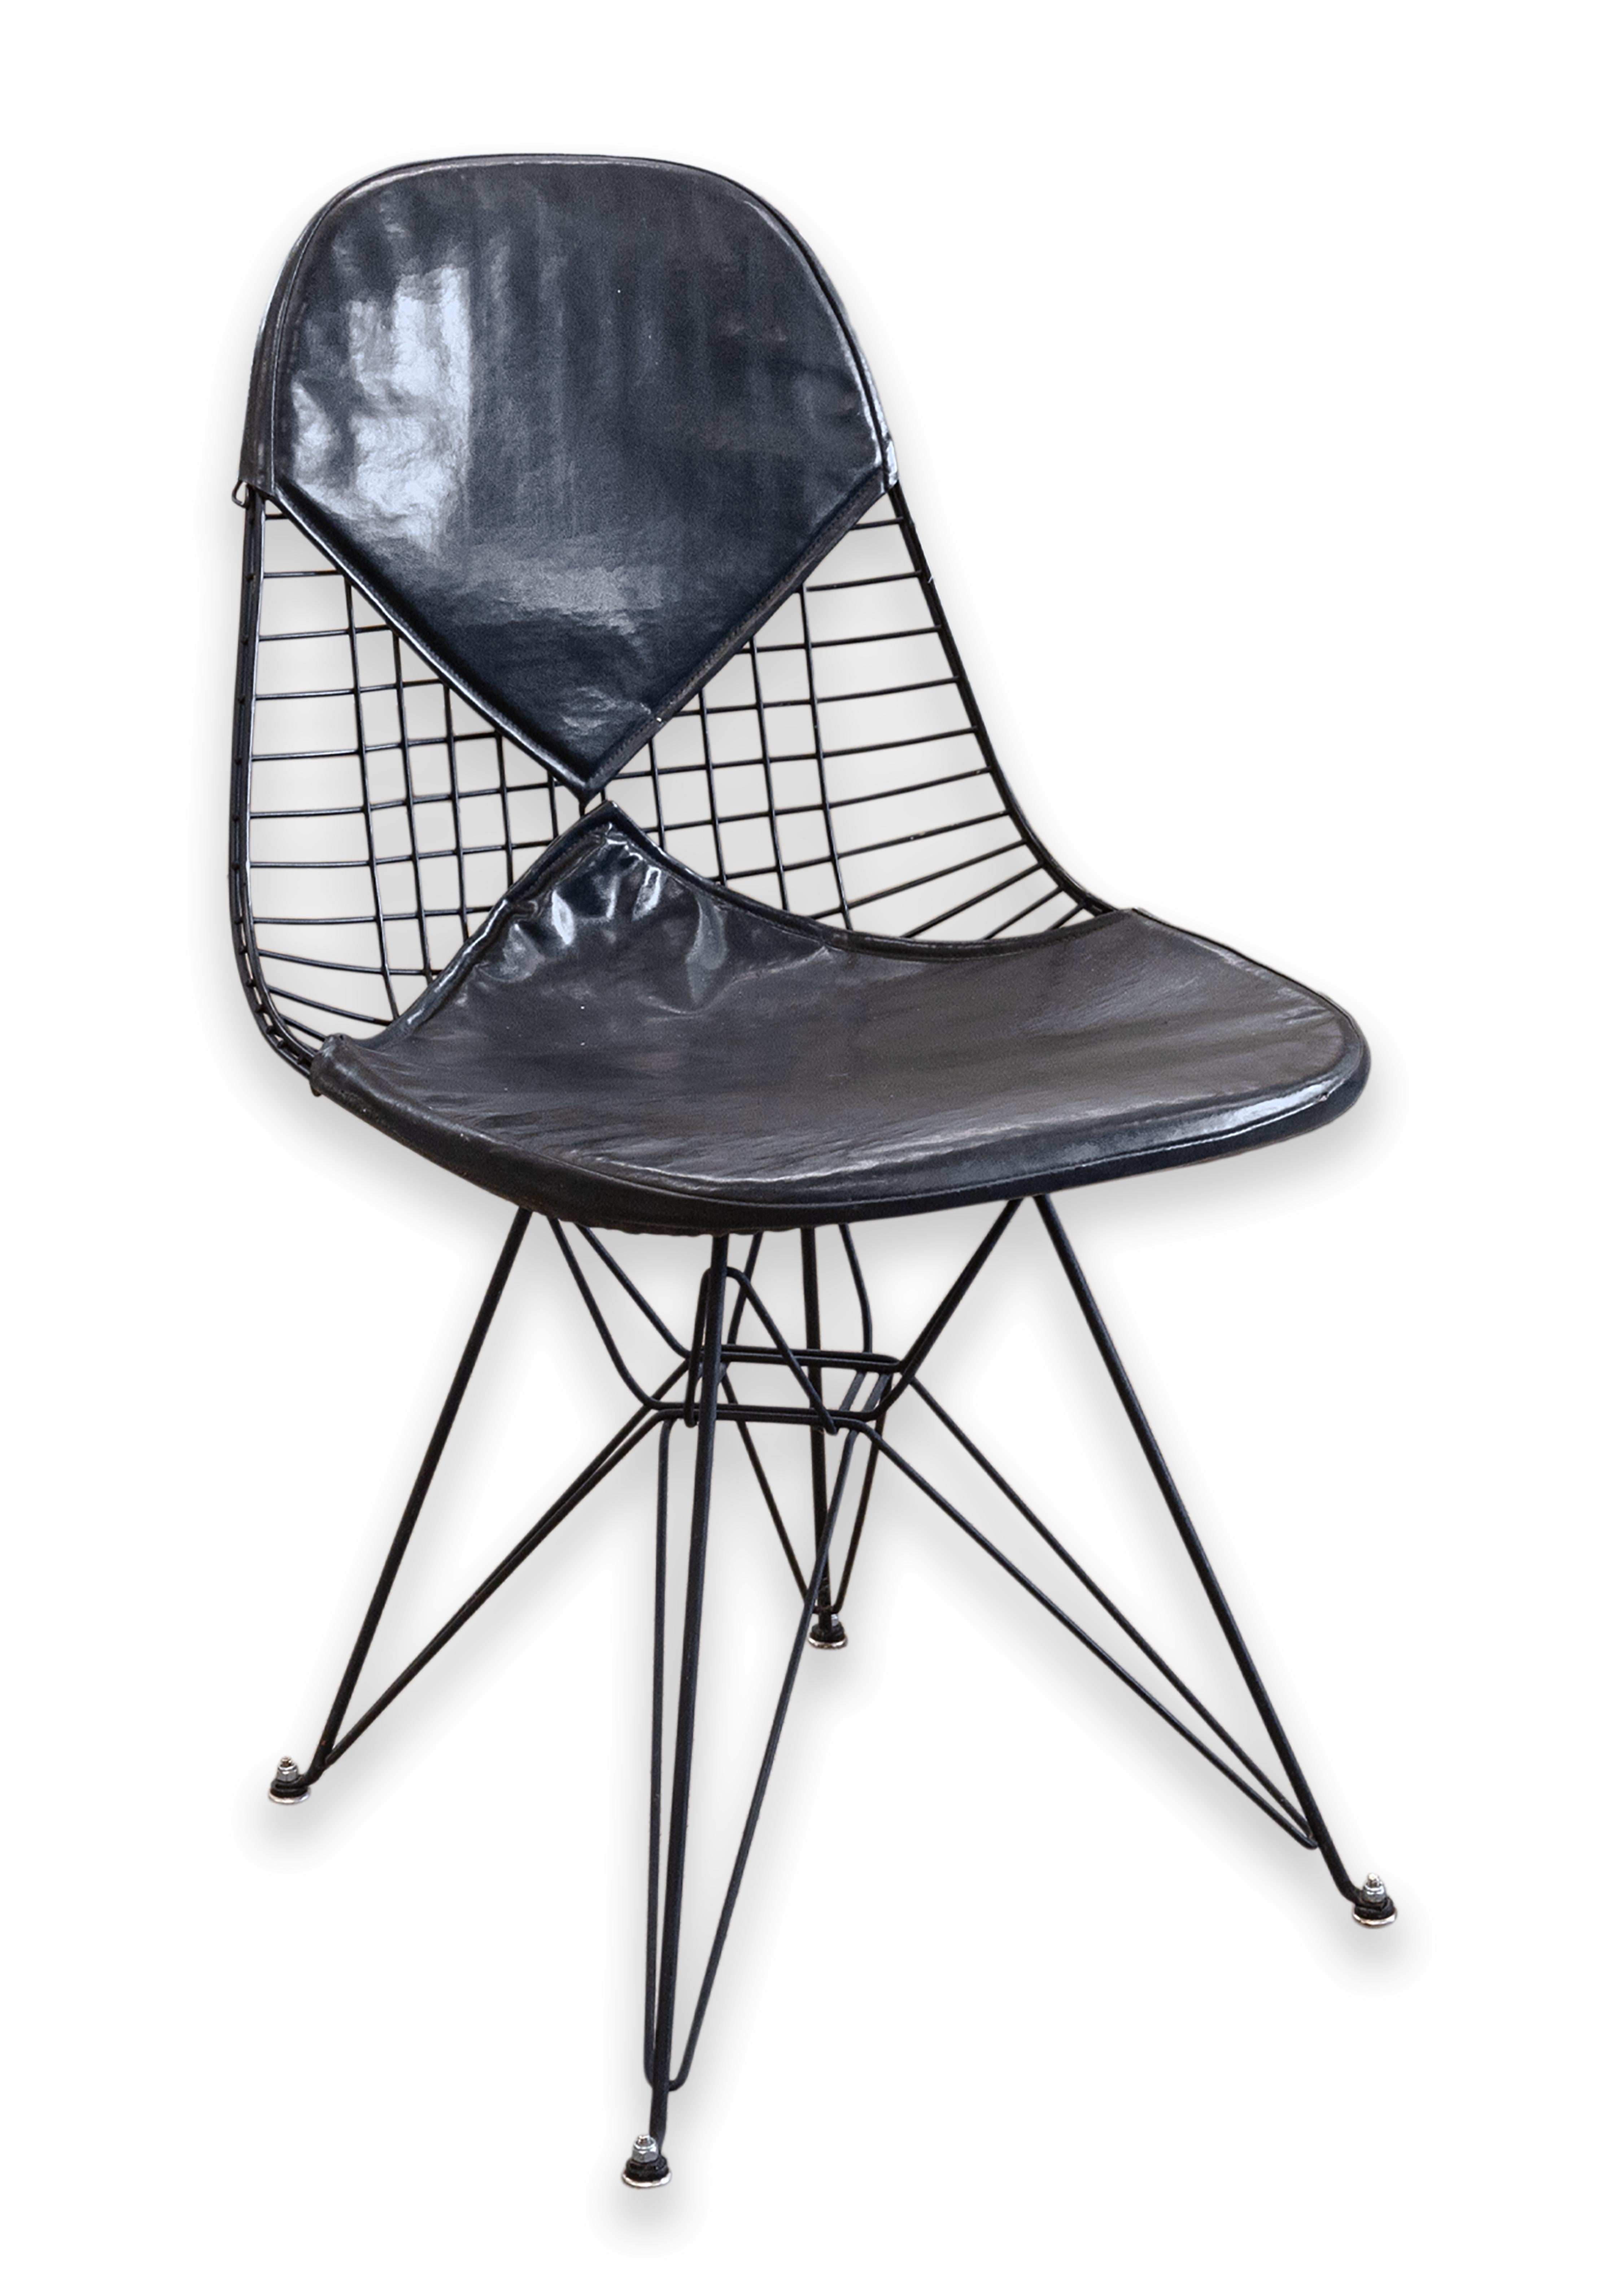 Ein Eames Herman Miller DKR-2 Wire Eiffel Tower Chair der 1. Generation. Ein wahrhaft ikonischer Stuhl aus der Zeit der Jahrhundertmitte. Dieses Stück hat den ikonischen Drahtrahmen mit schwarzem Finish, vier Drahtbeine mit gespreizten Füßen und den